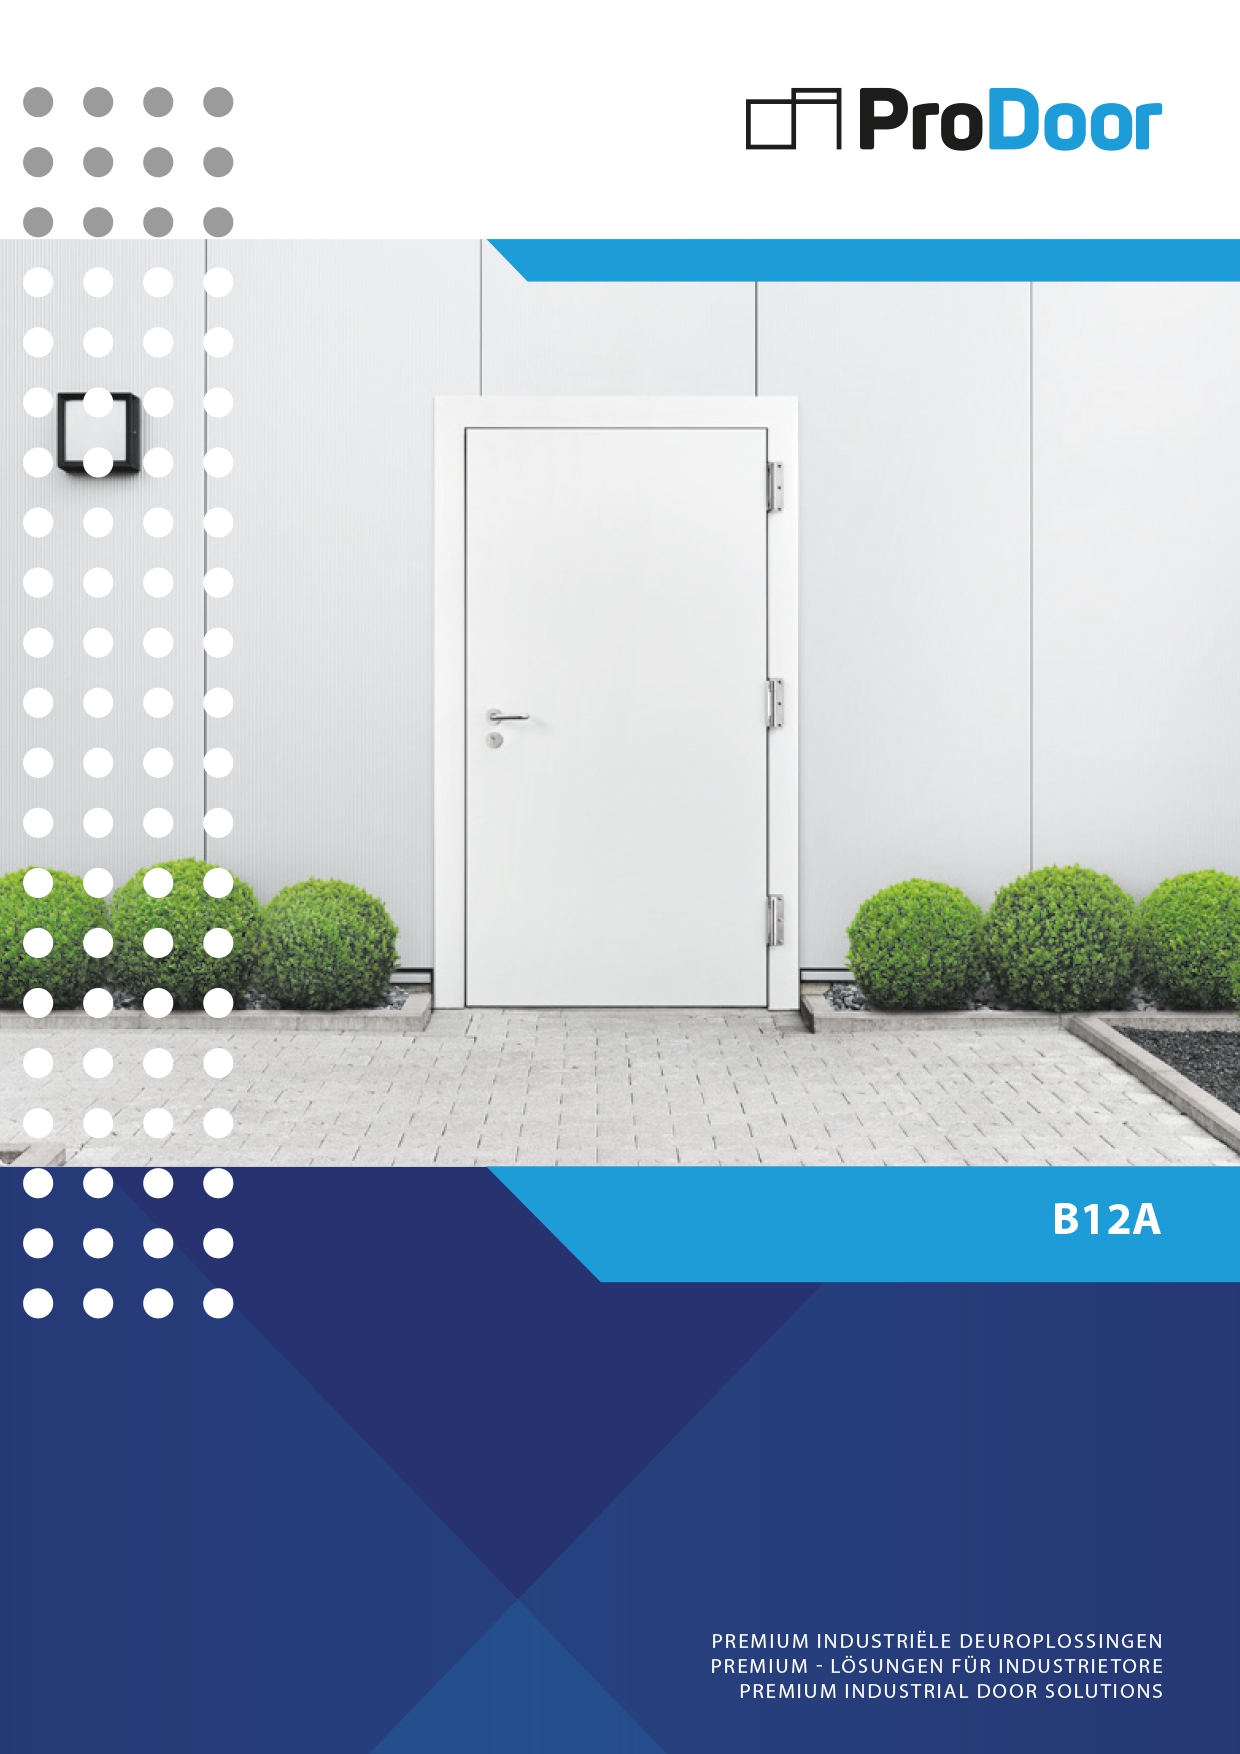 888_new-prodoor-cool-it-b12a-hinged-door-for-outdoor-use-deutsch-english-final-1_detailpagina_20210514213454.jpg